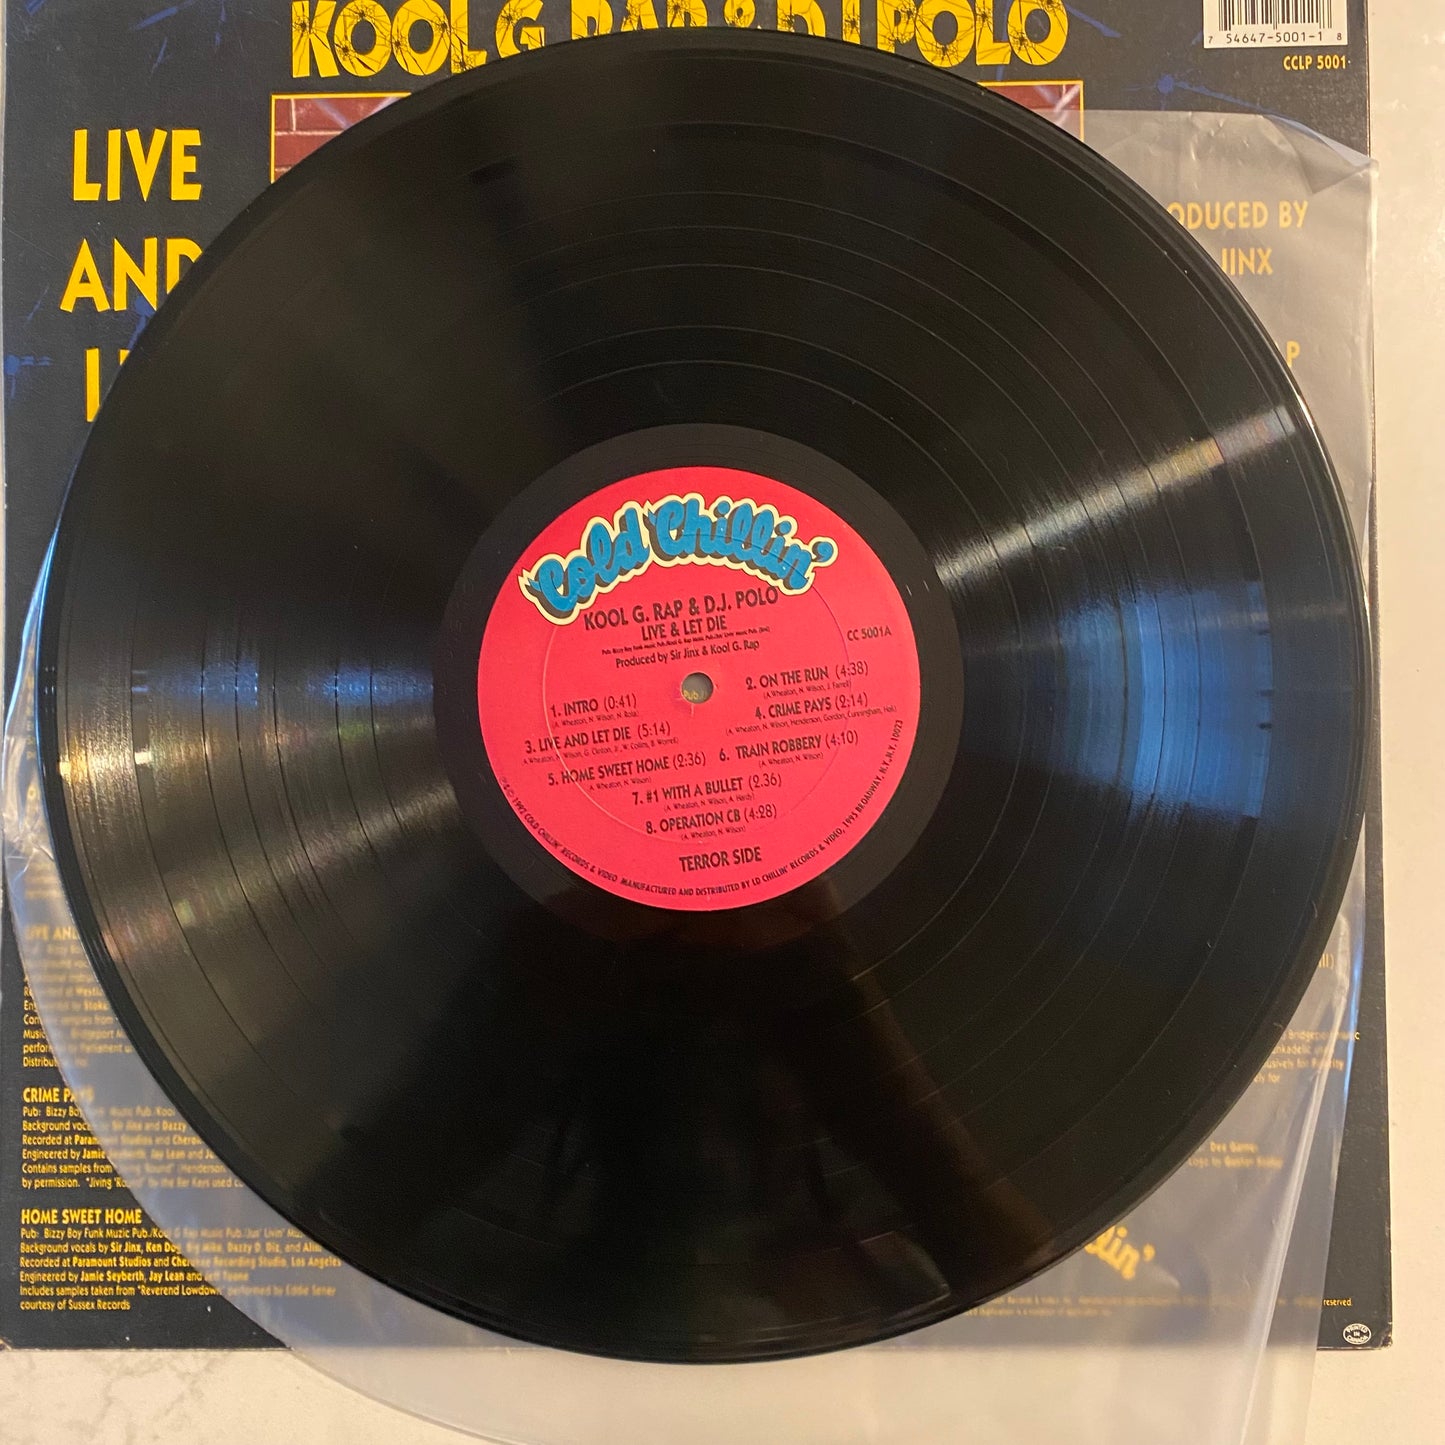 Kool G. Rap & D.J. Polo* - Live And Let Die (LP, Album)